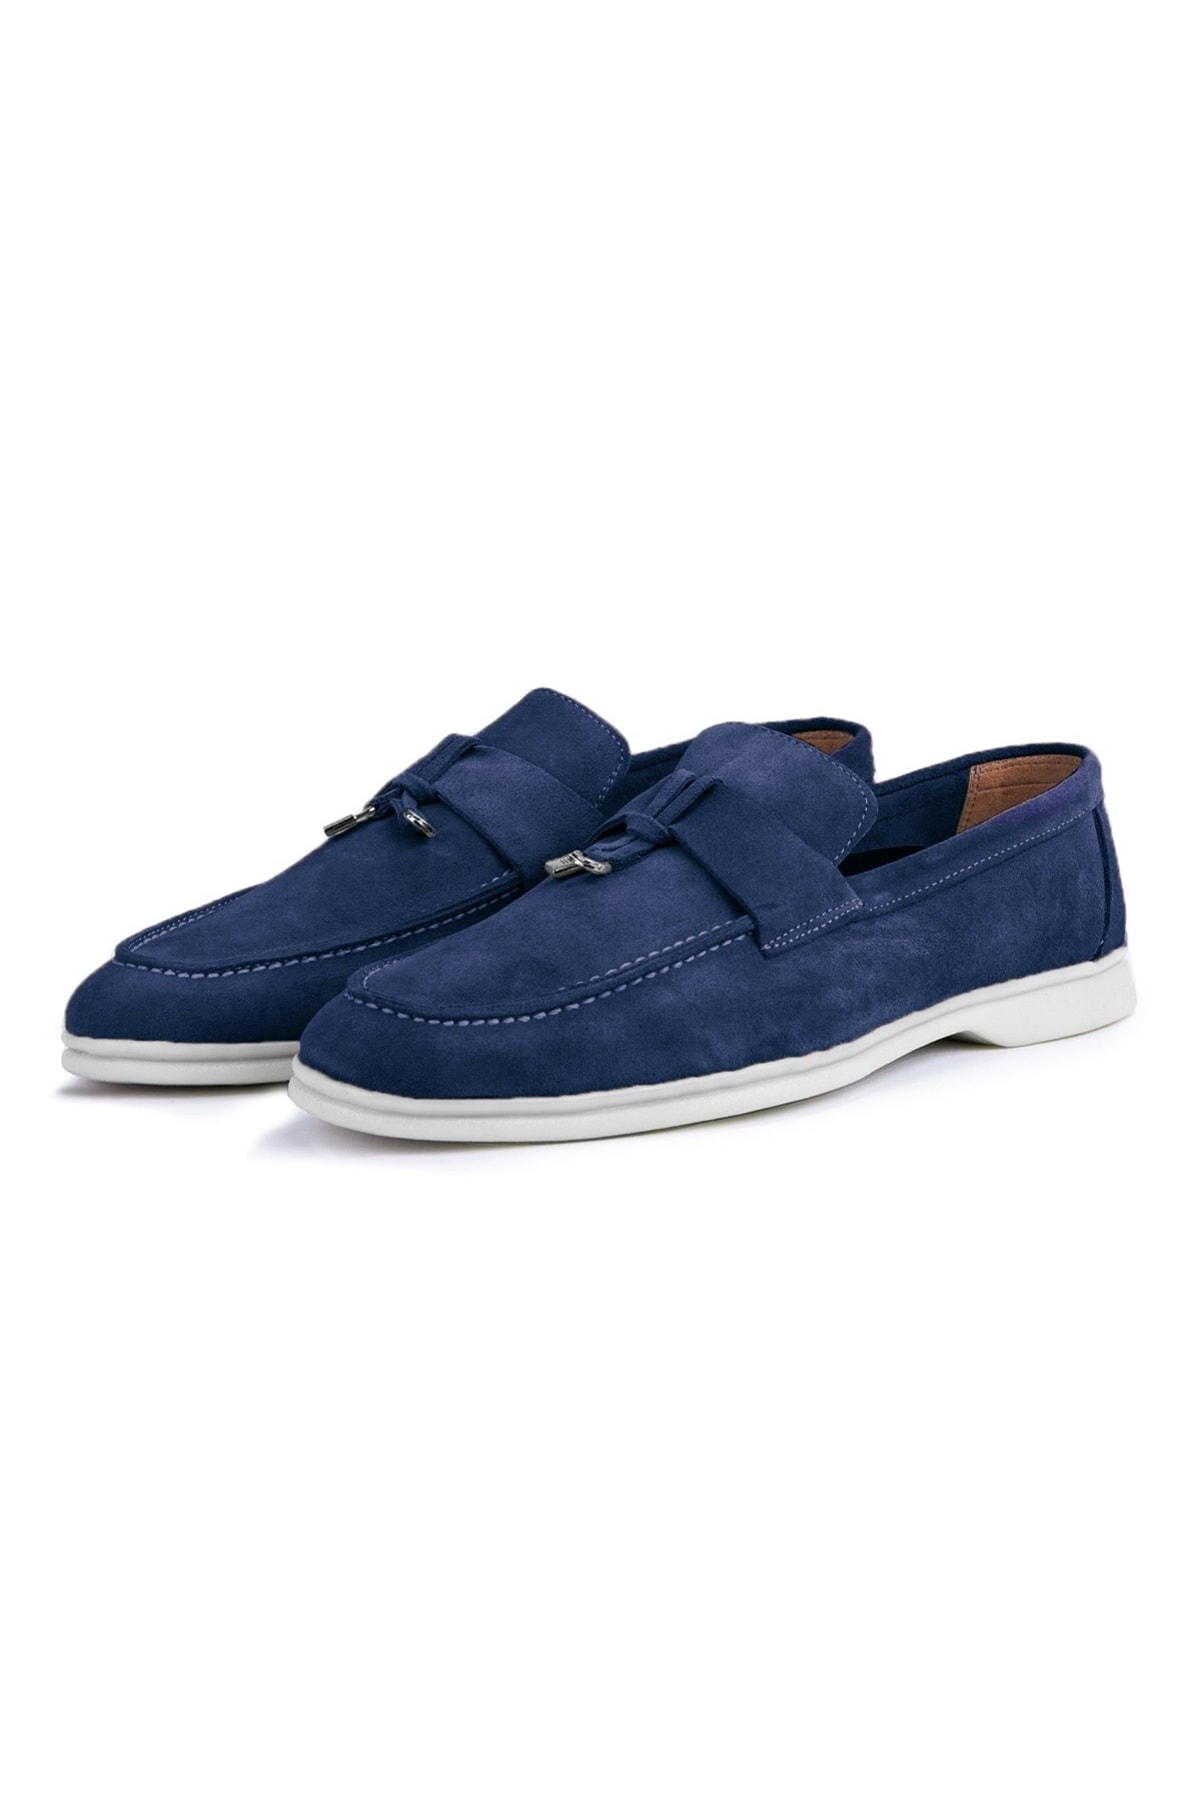 Levně Ducavelli Cerrar Suede Genuine Leather Men's Casual Shoes Loafers Shoes Navy Blue.